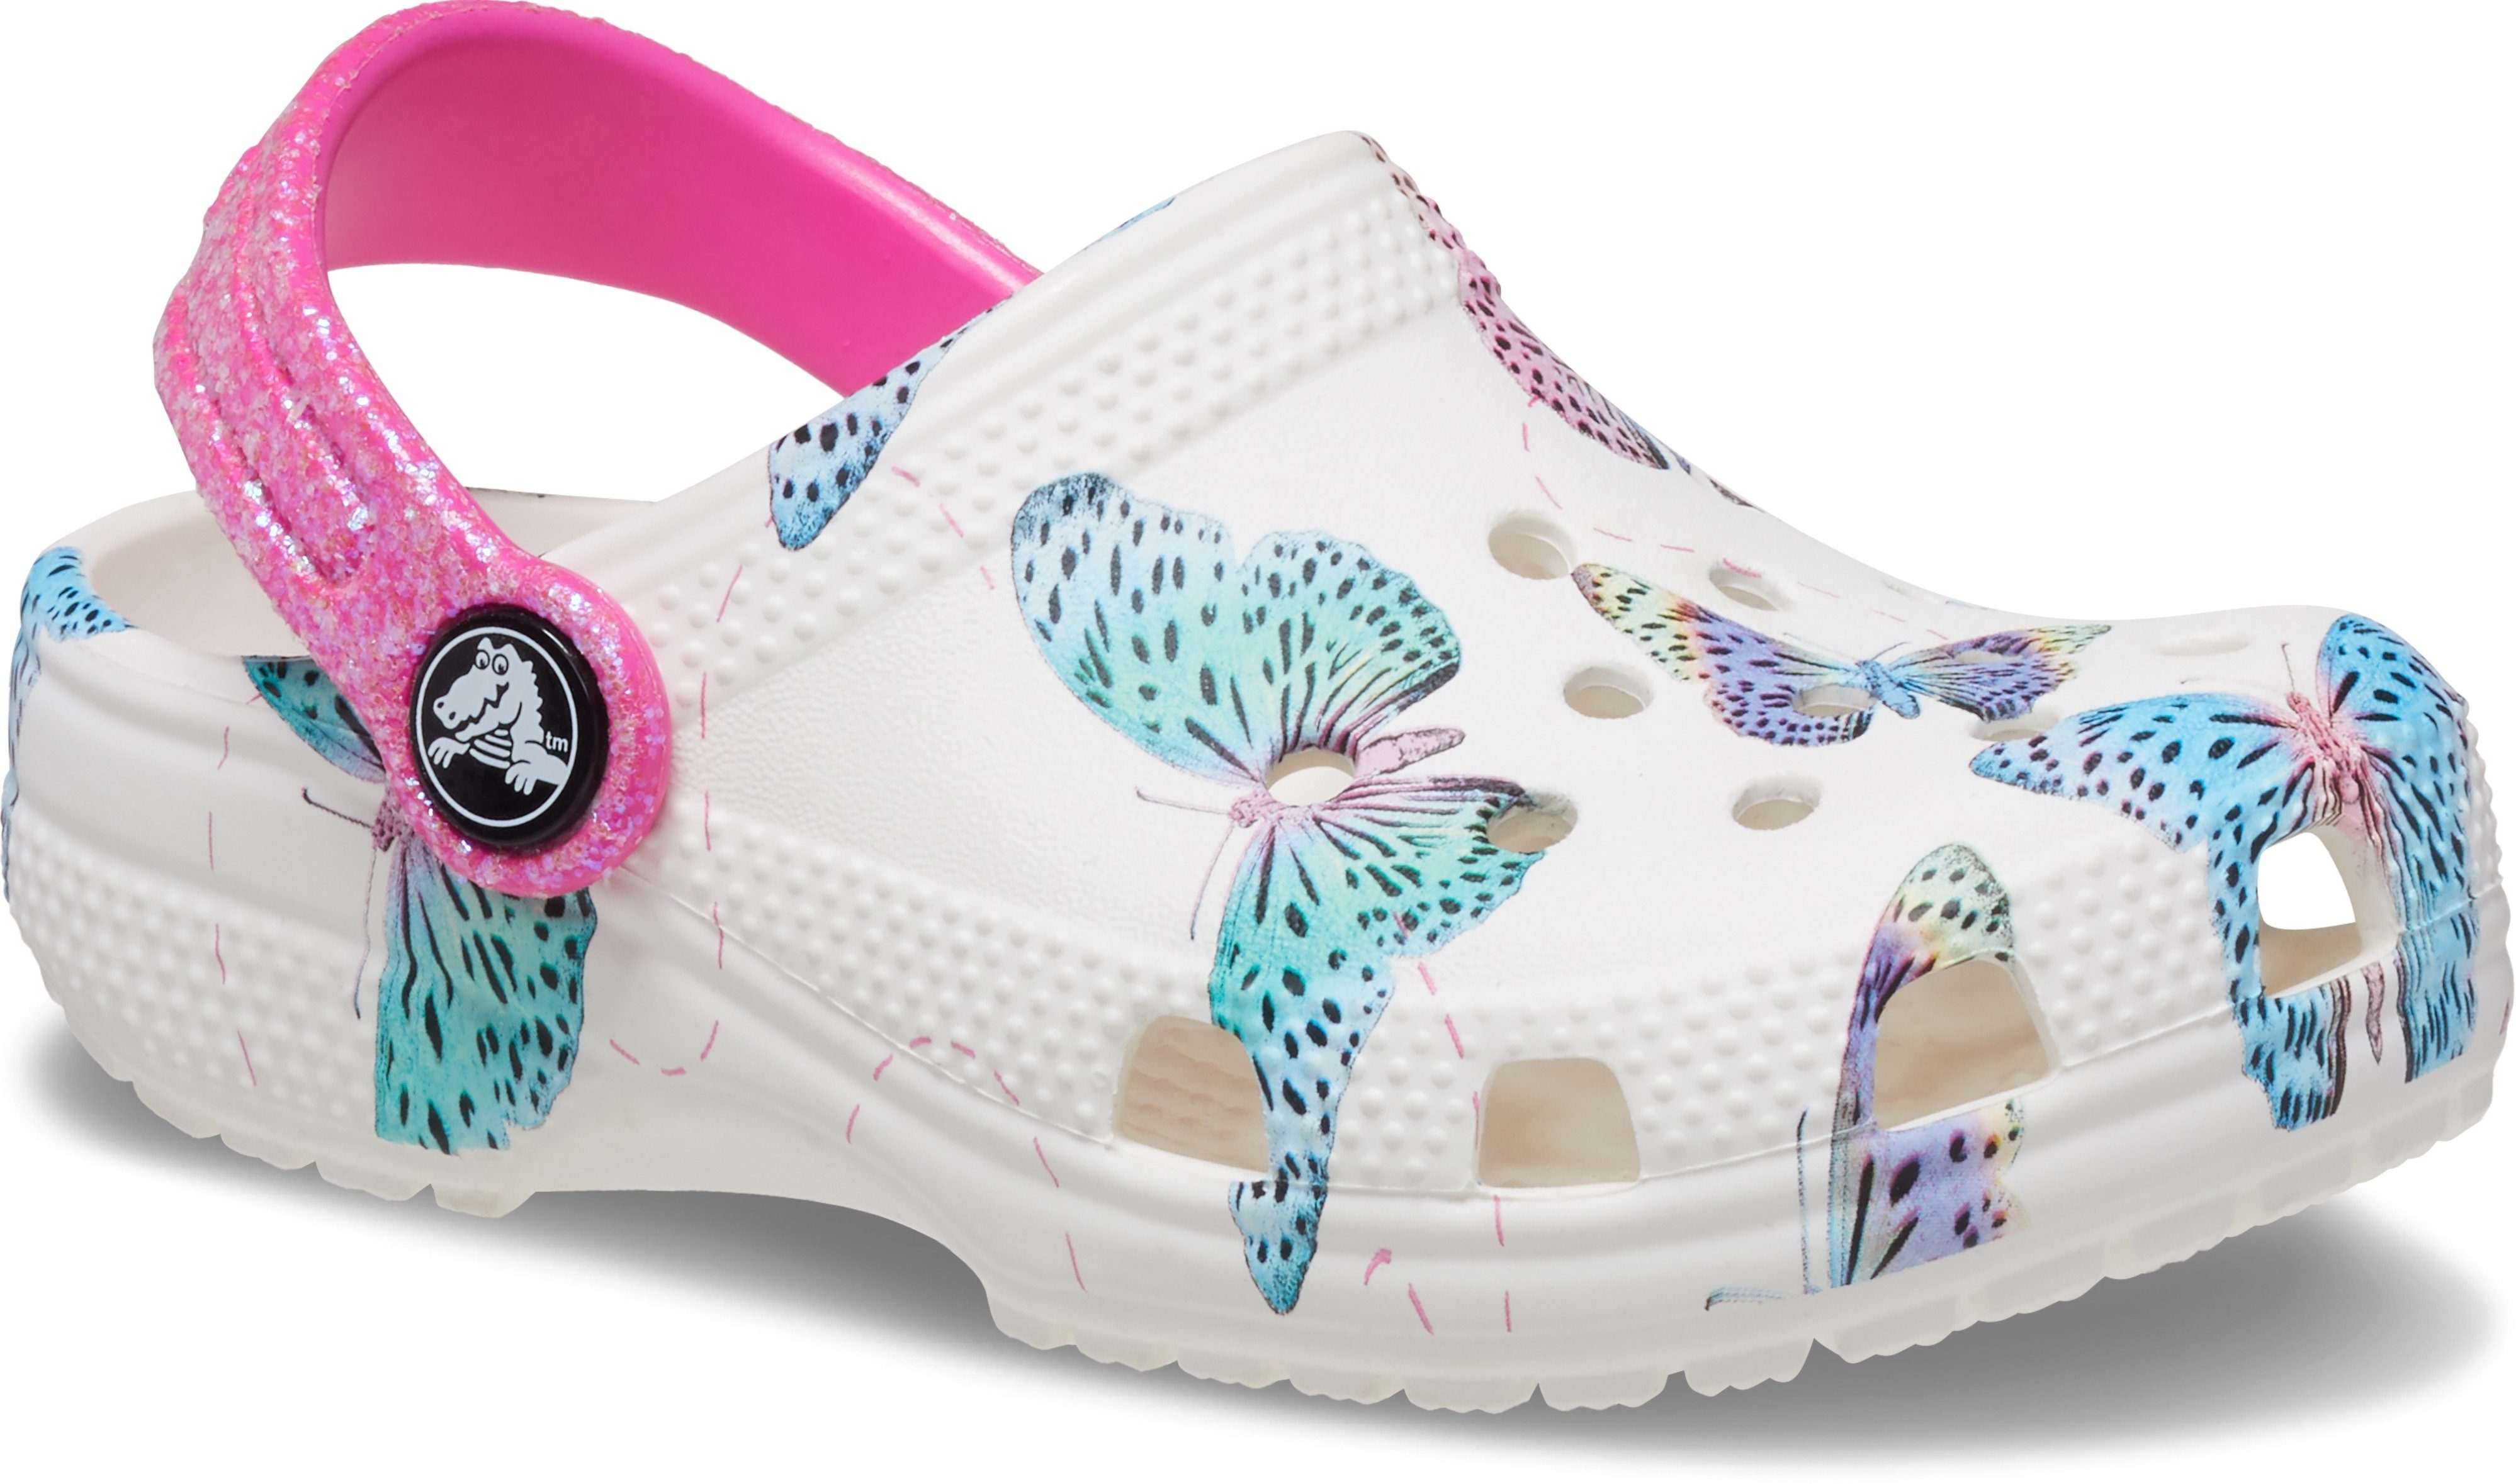 Crocs Hausschuh mit Fersenriemen weiß-pink-Schmetterling